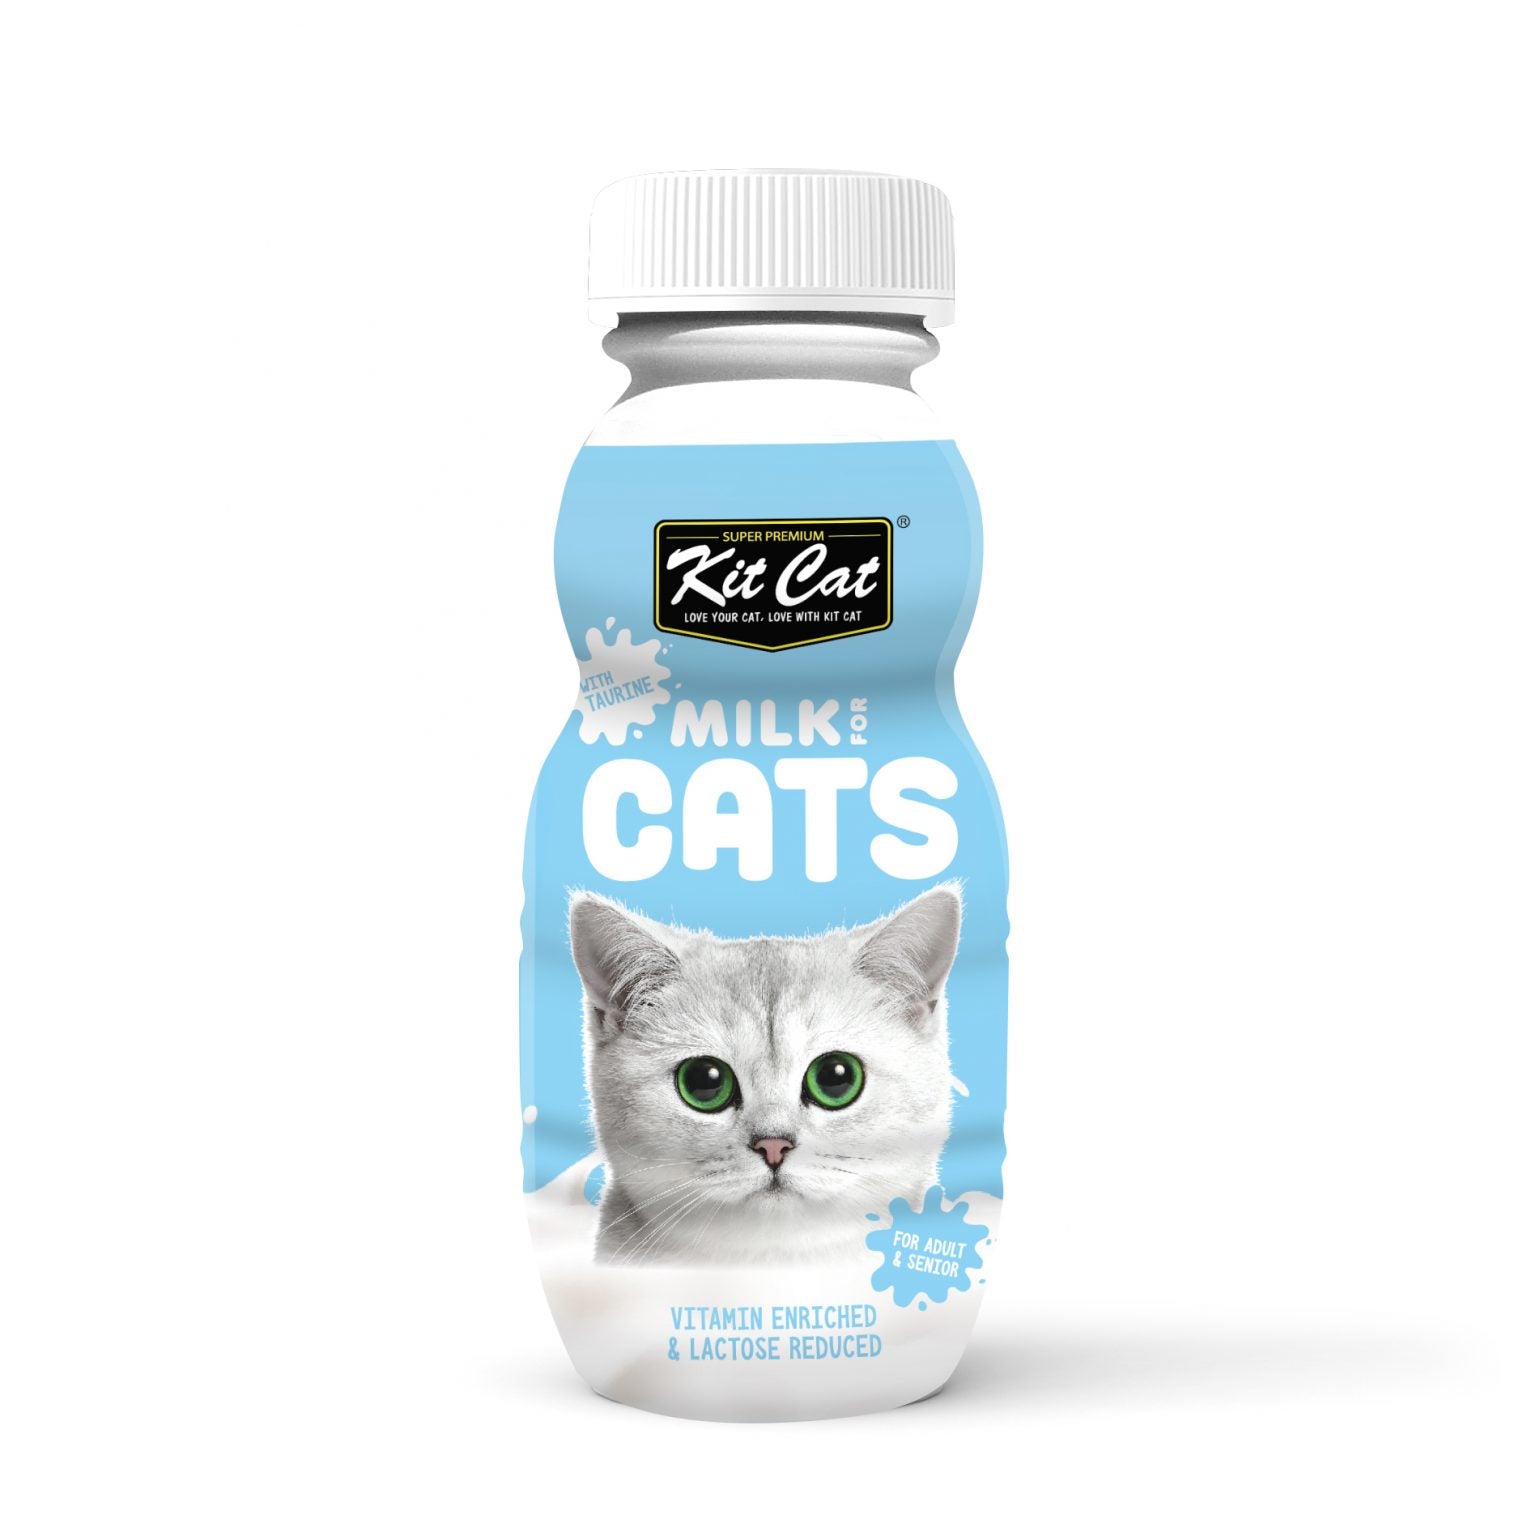 Kitcat Cat Milk far Adult Cats